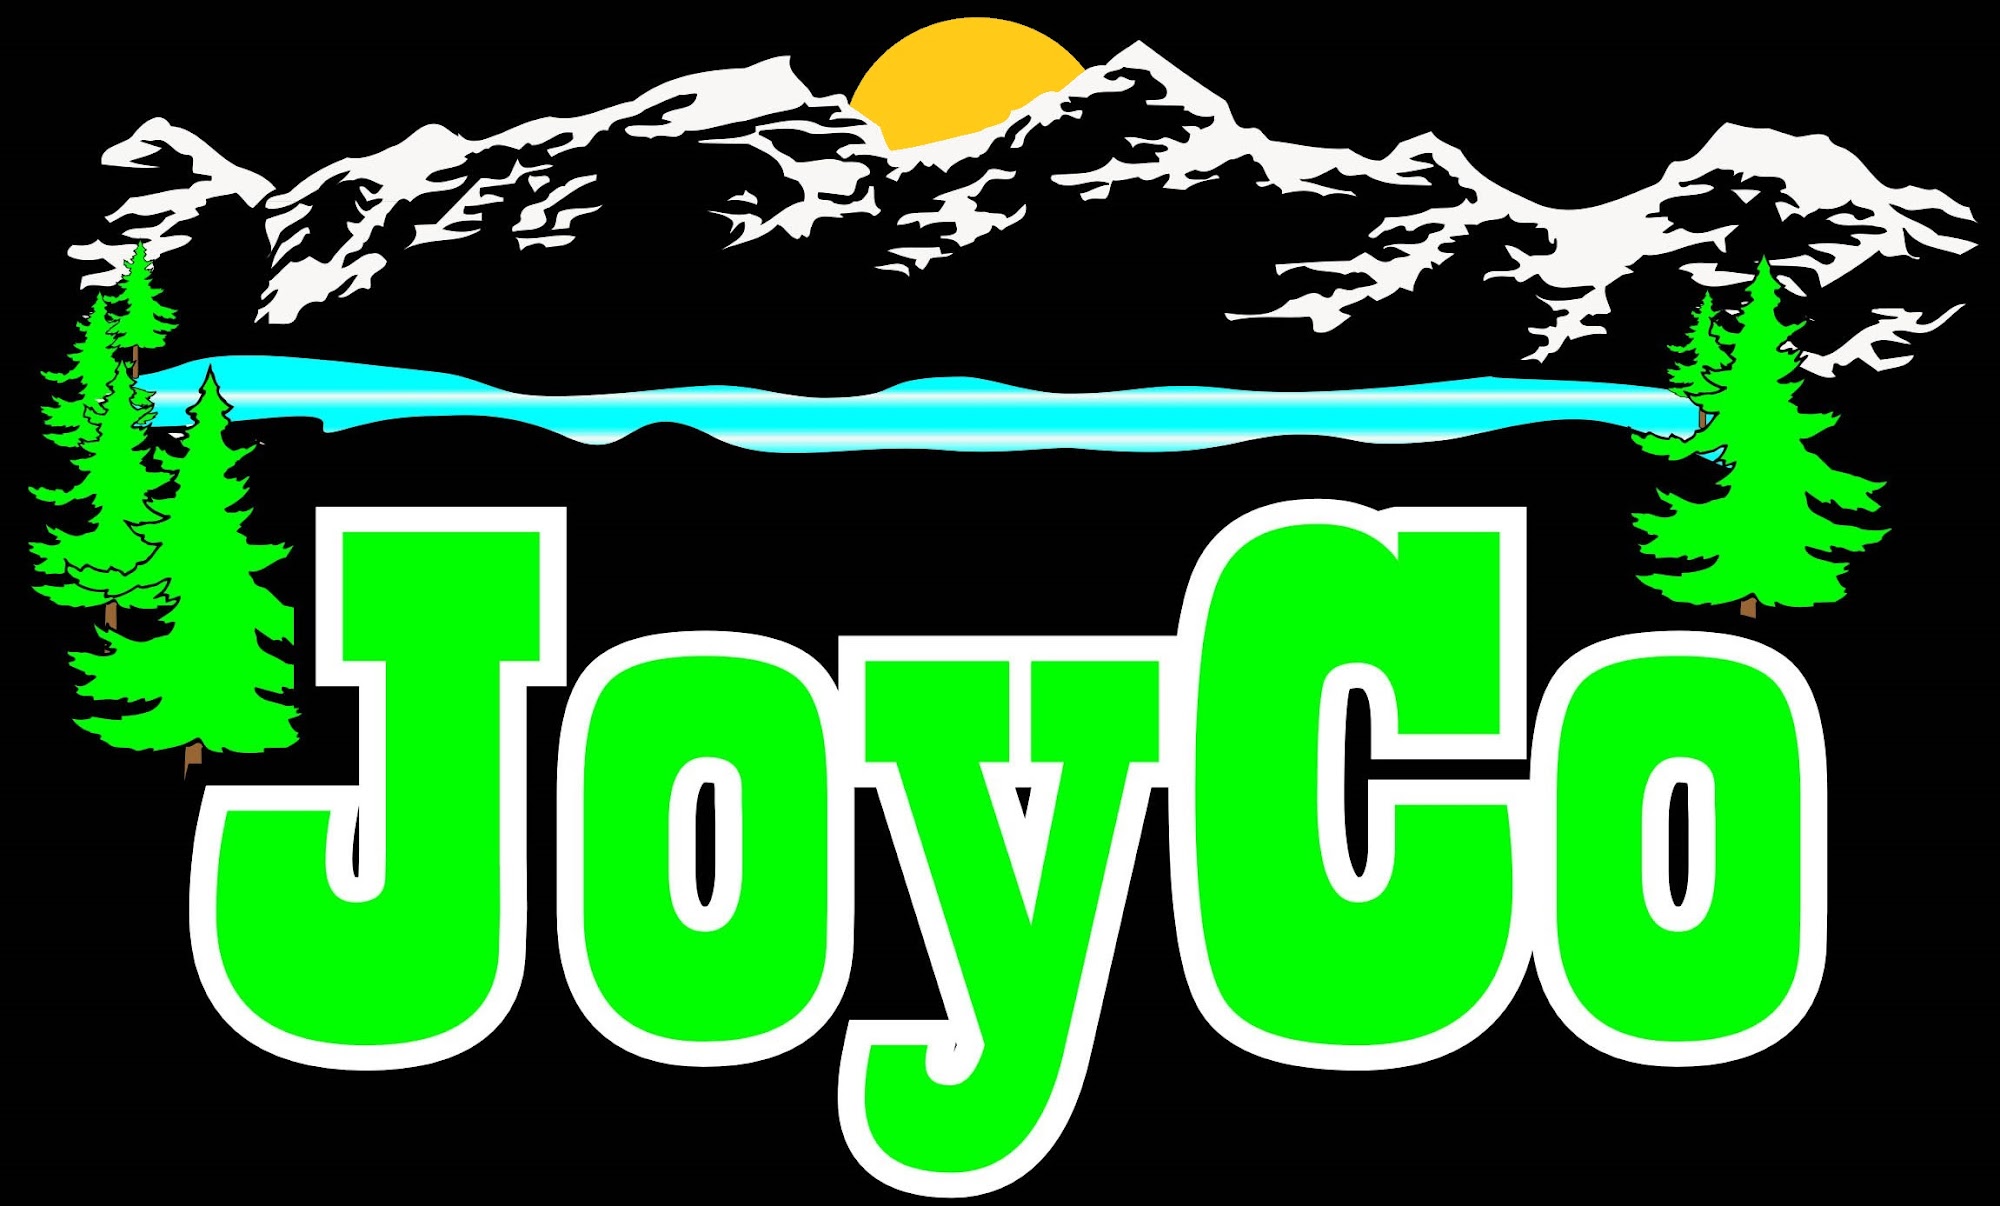 Joy Co